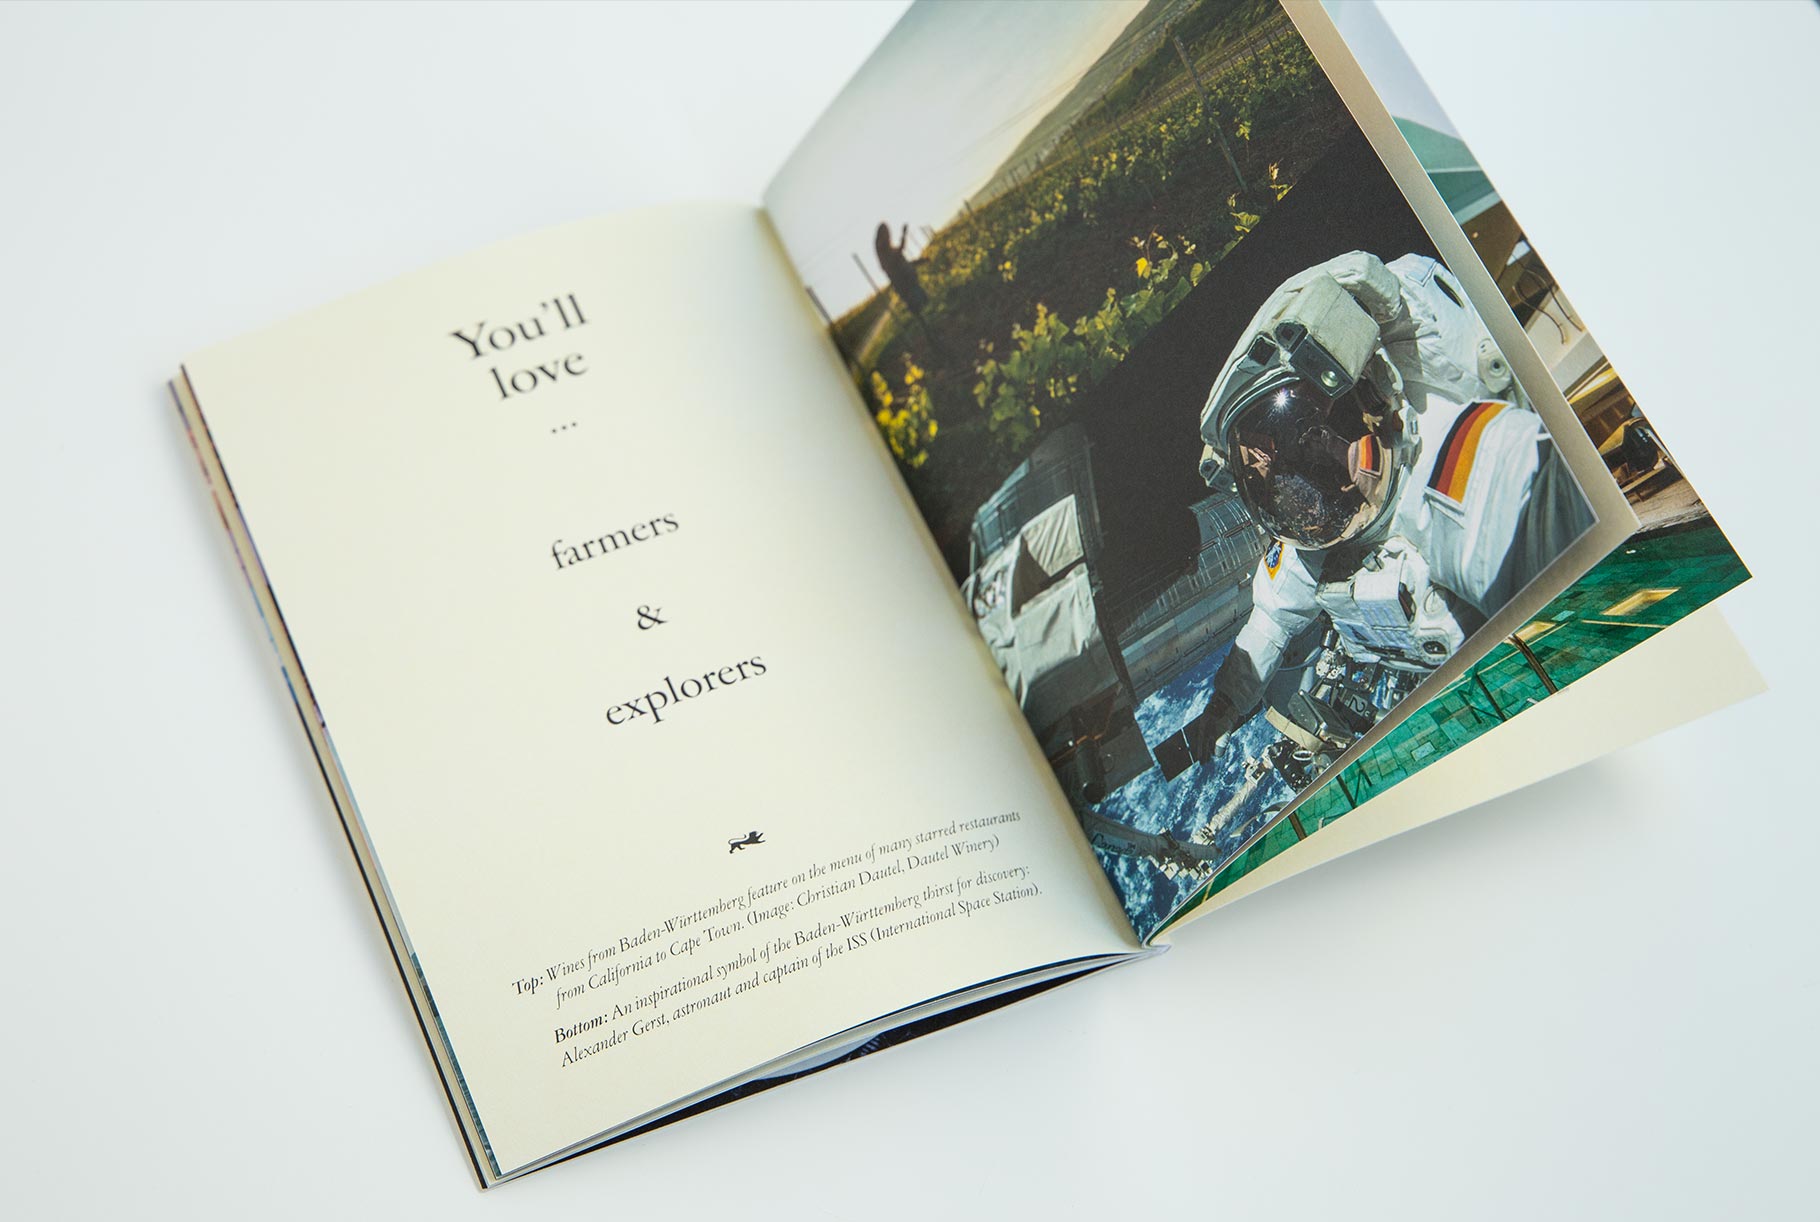 Aufgeschlagene Broschüre. Auf einer Seite ist die Headline 'You’ll love ... farmers & explorers' zu lesen. Auf der anderen Seite sieht man das Bild eines Mannes von Dautel Winery auf einem Weinberg bei der Arbeit. Darunter das Bild vom Astronauten und ISS-Captain Alexander Gerst im Weltall.